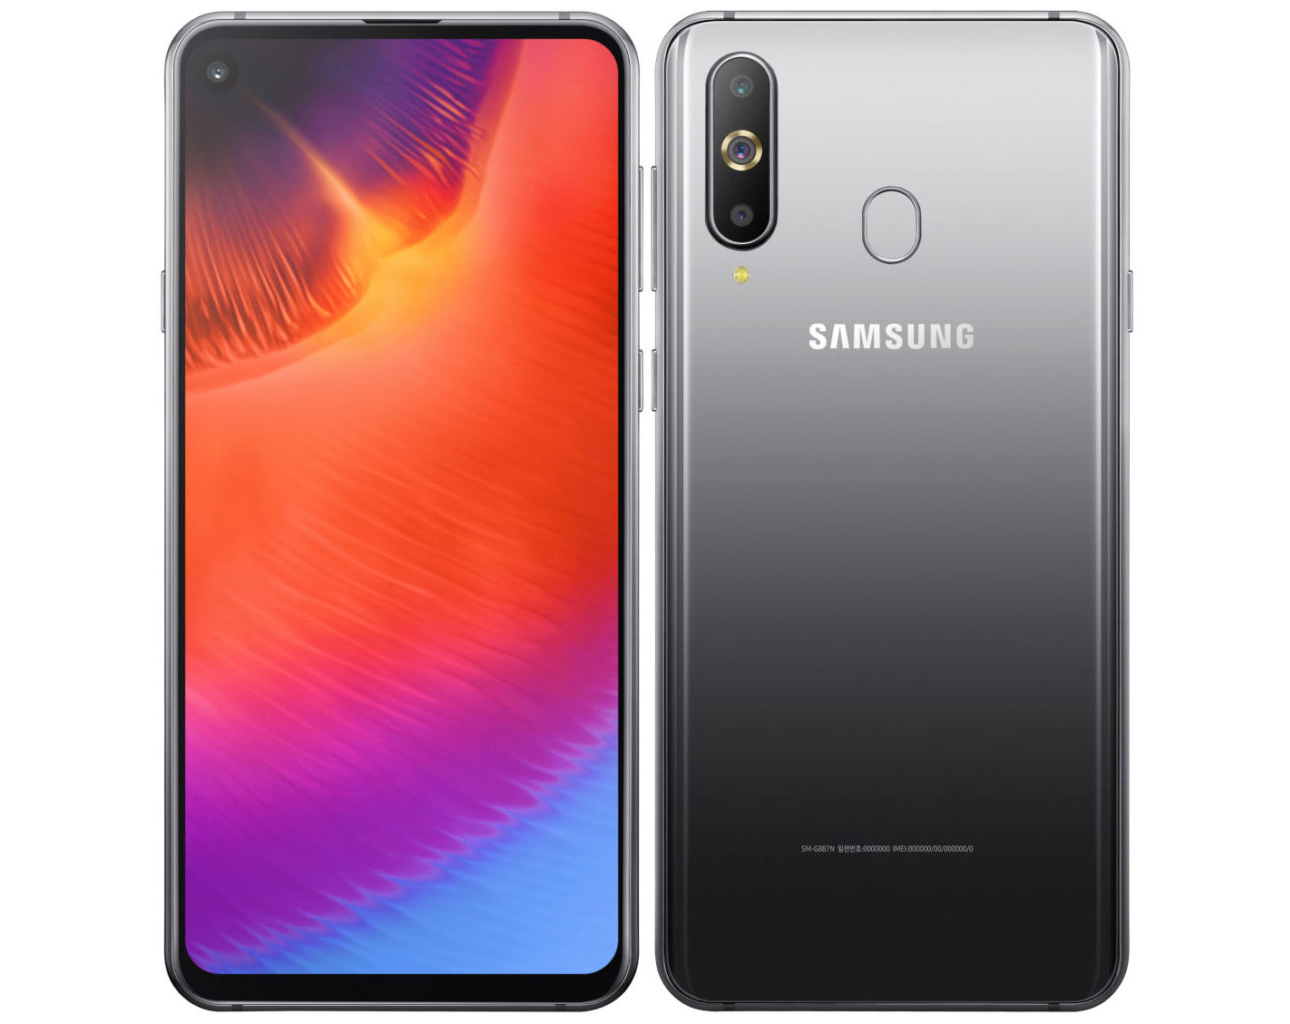 Samsung Galaxy A9 Pro (2019) tanıtıldı